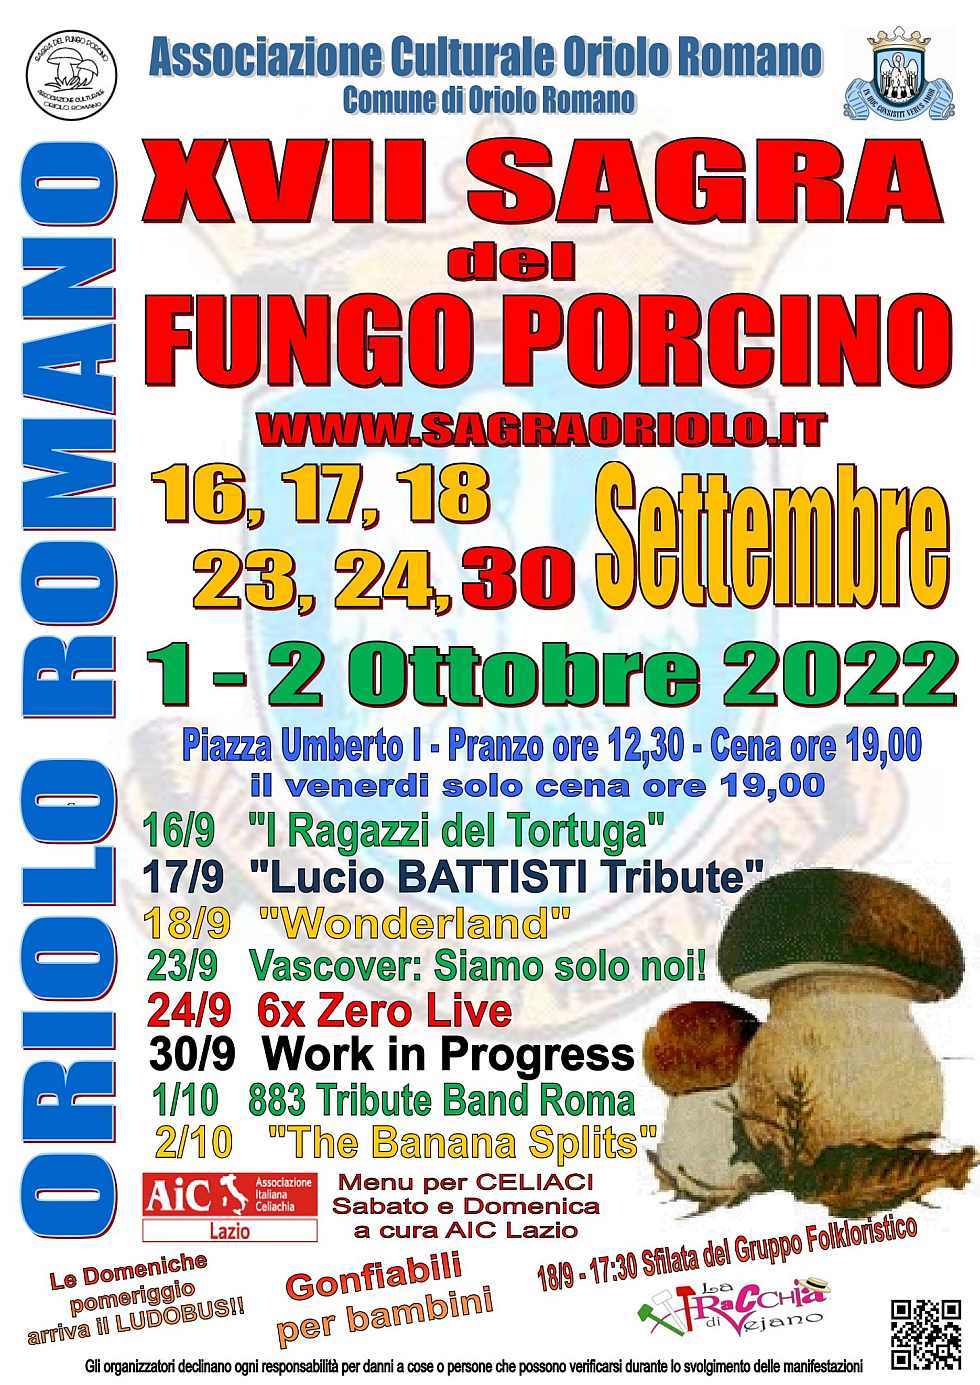 Oriolo Romano (VT)
"XVII^ Sagra del Fungo Porcino"
16-17-18 • 23-24 - 30 Settembre 
1-2 Ottobre 2022 